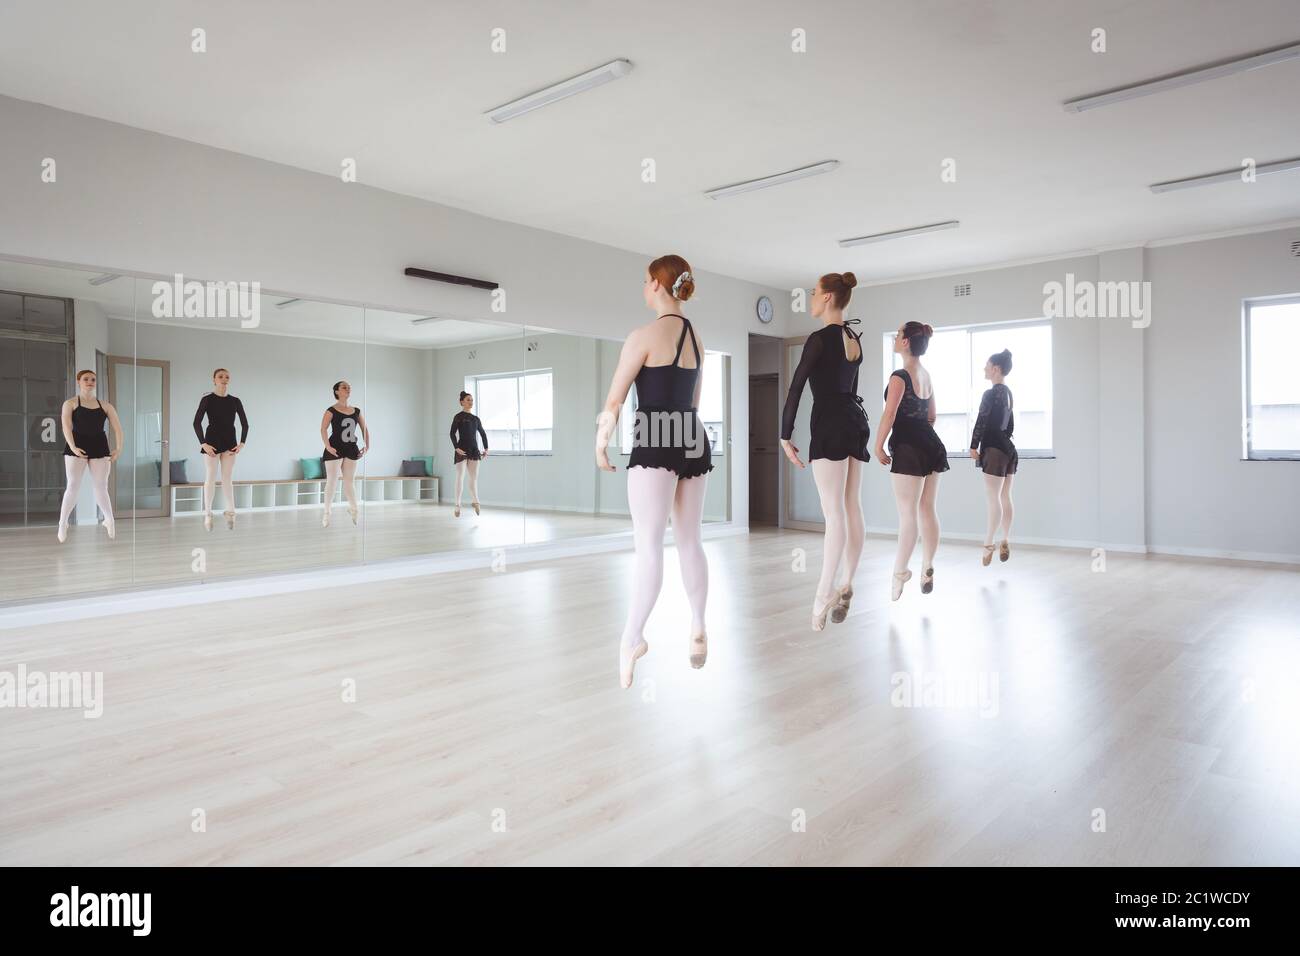 Ballerine caucasiche di balletto in tute nere che si esercitano durante una classe Foto Stock